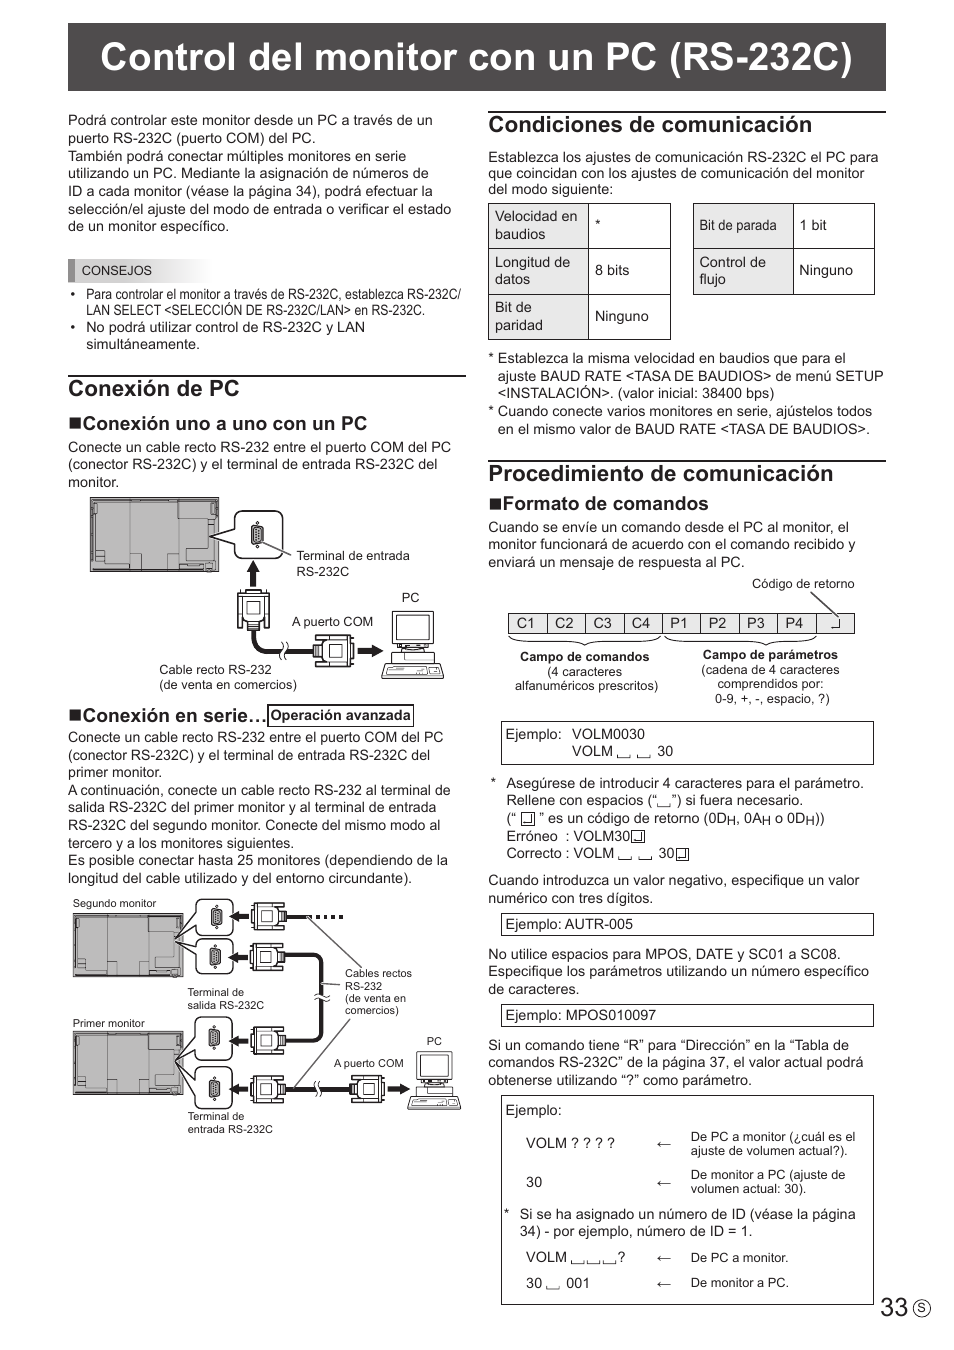 Control del monitor con un pc (rs-232c), Conexión de pc, Condiciones de comunicación | Procedimiento de comunicación, Nconexión uno a uno con un pc, Nconexión en serie, Nformato de comandos | Sharp PN-E703 Manual del usuario | Página 33 / 63